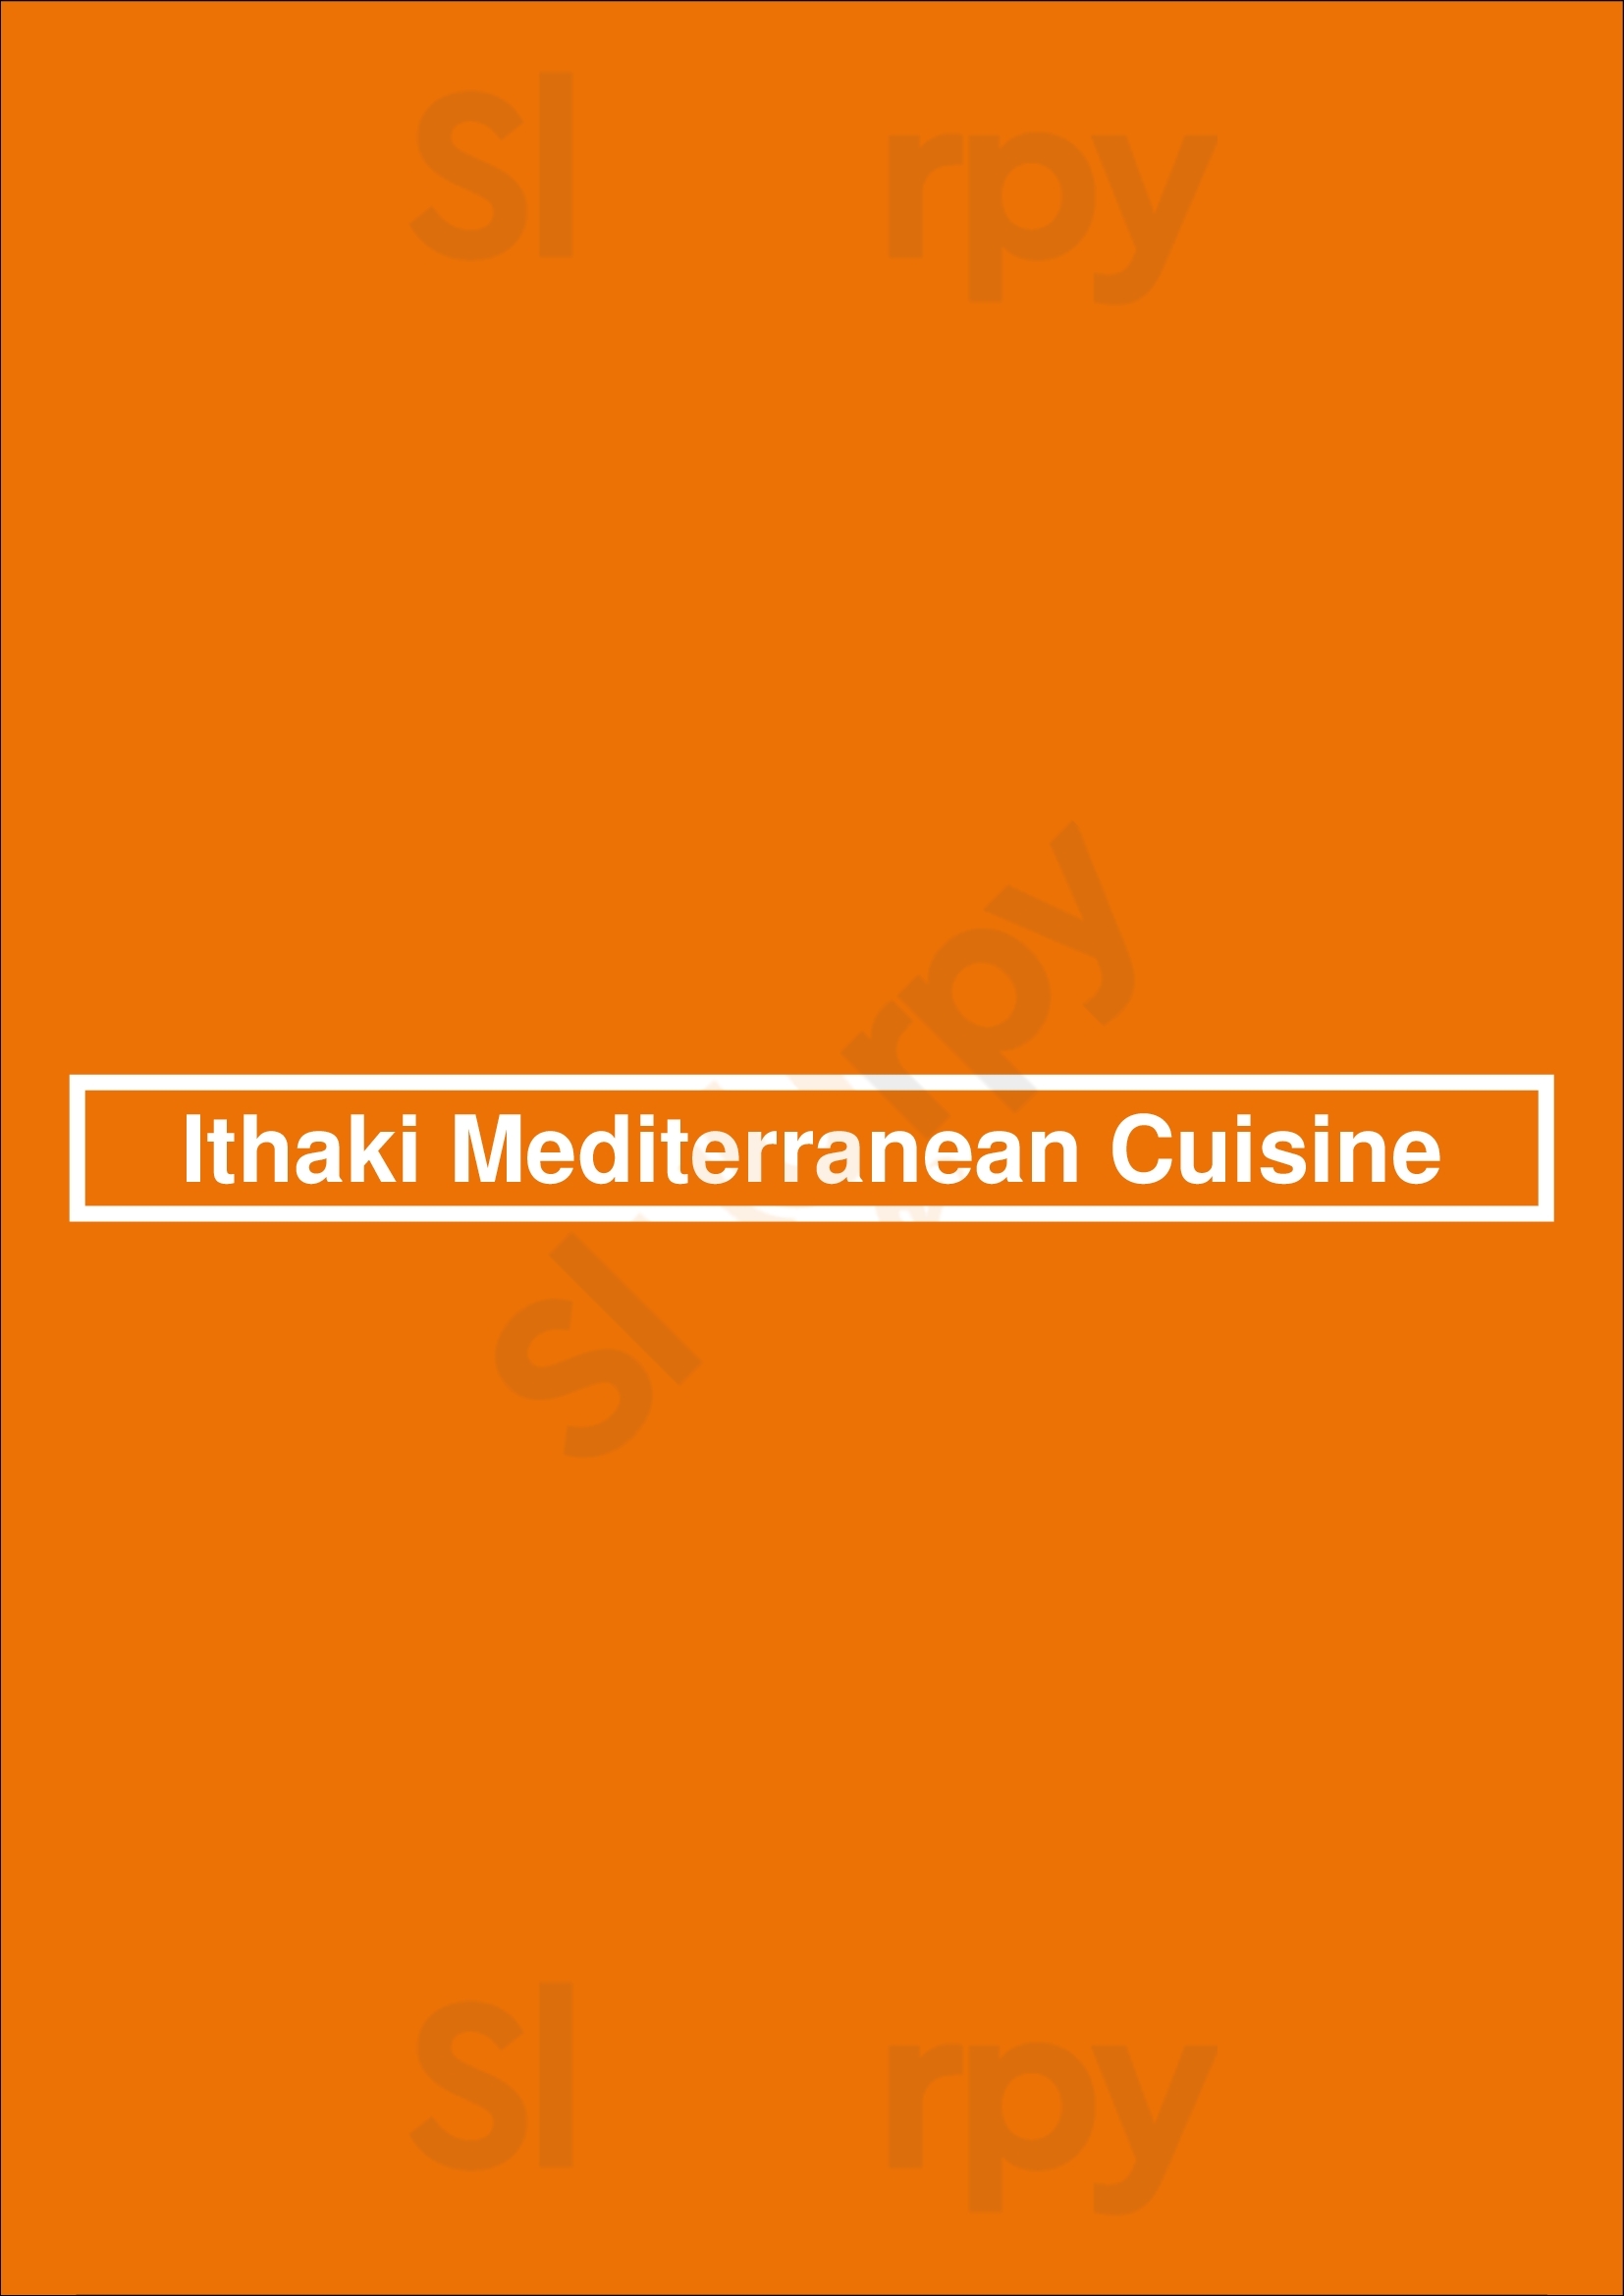 Ithaki Mediterranean Cuisine Ipswich Menu - 1